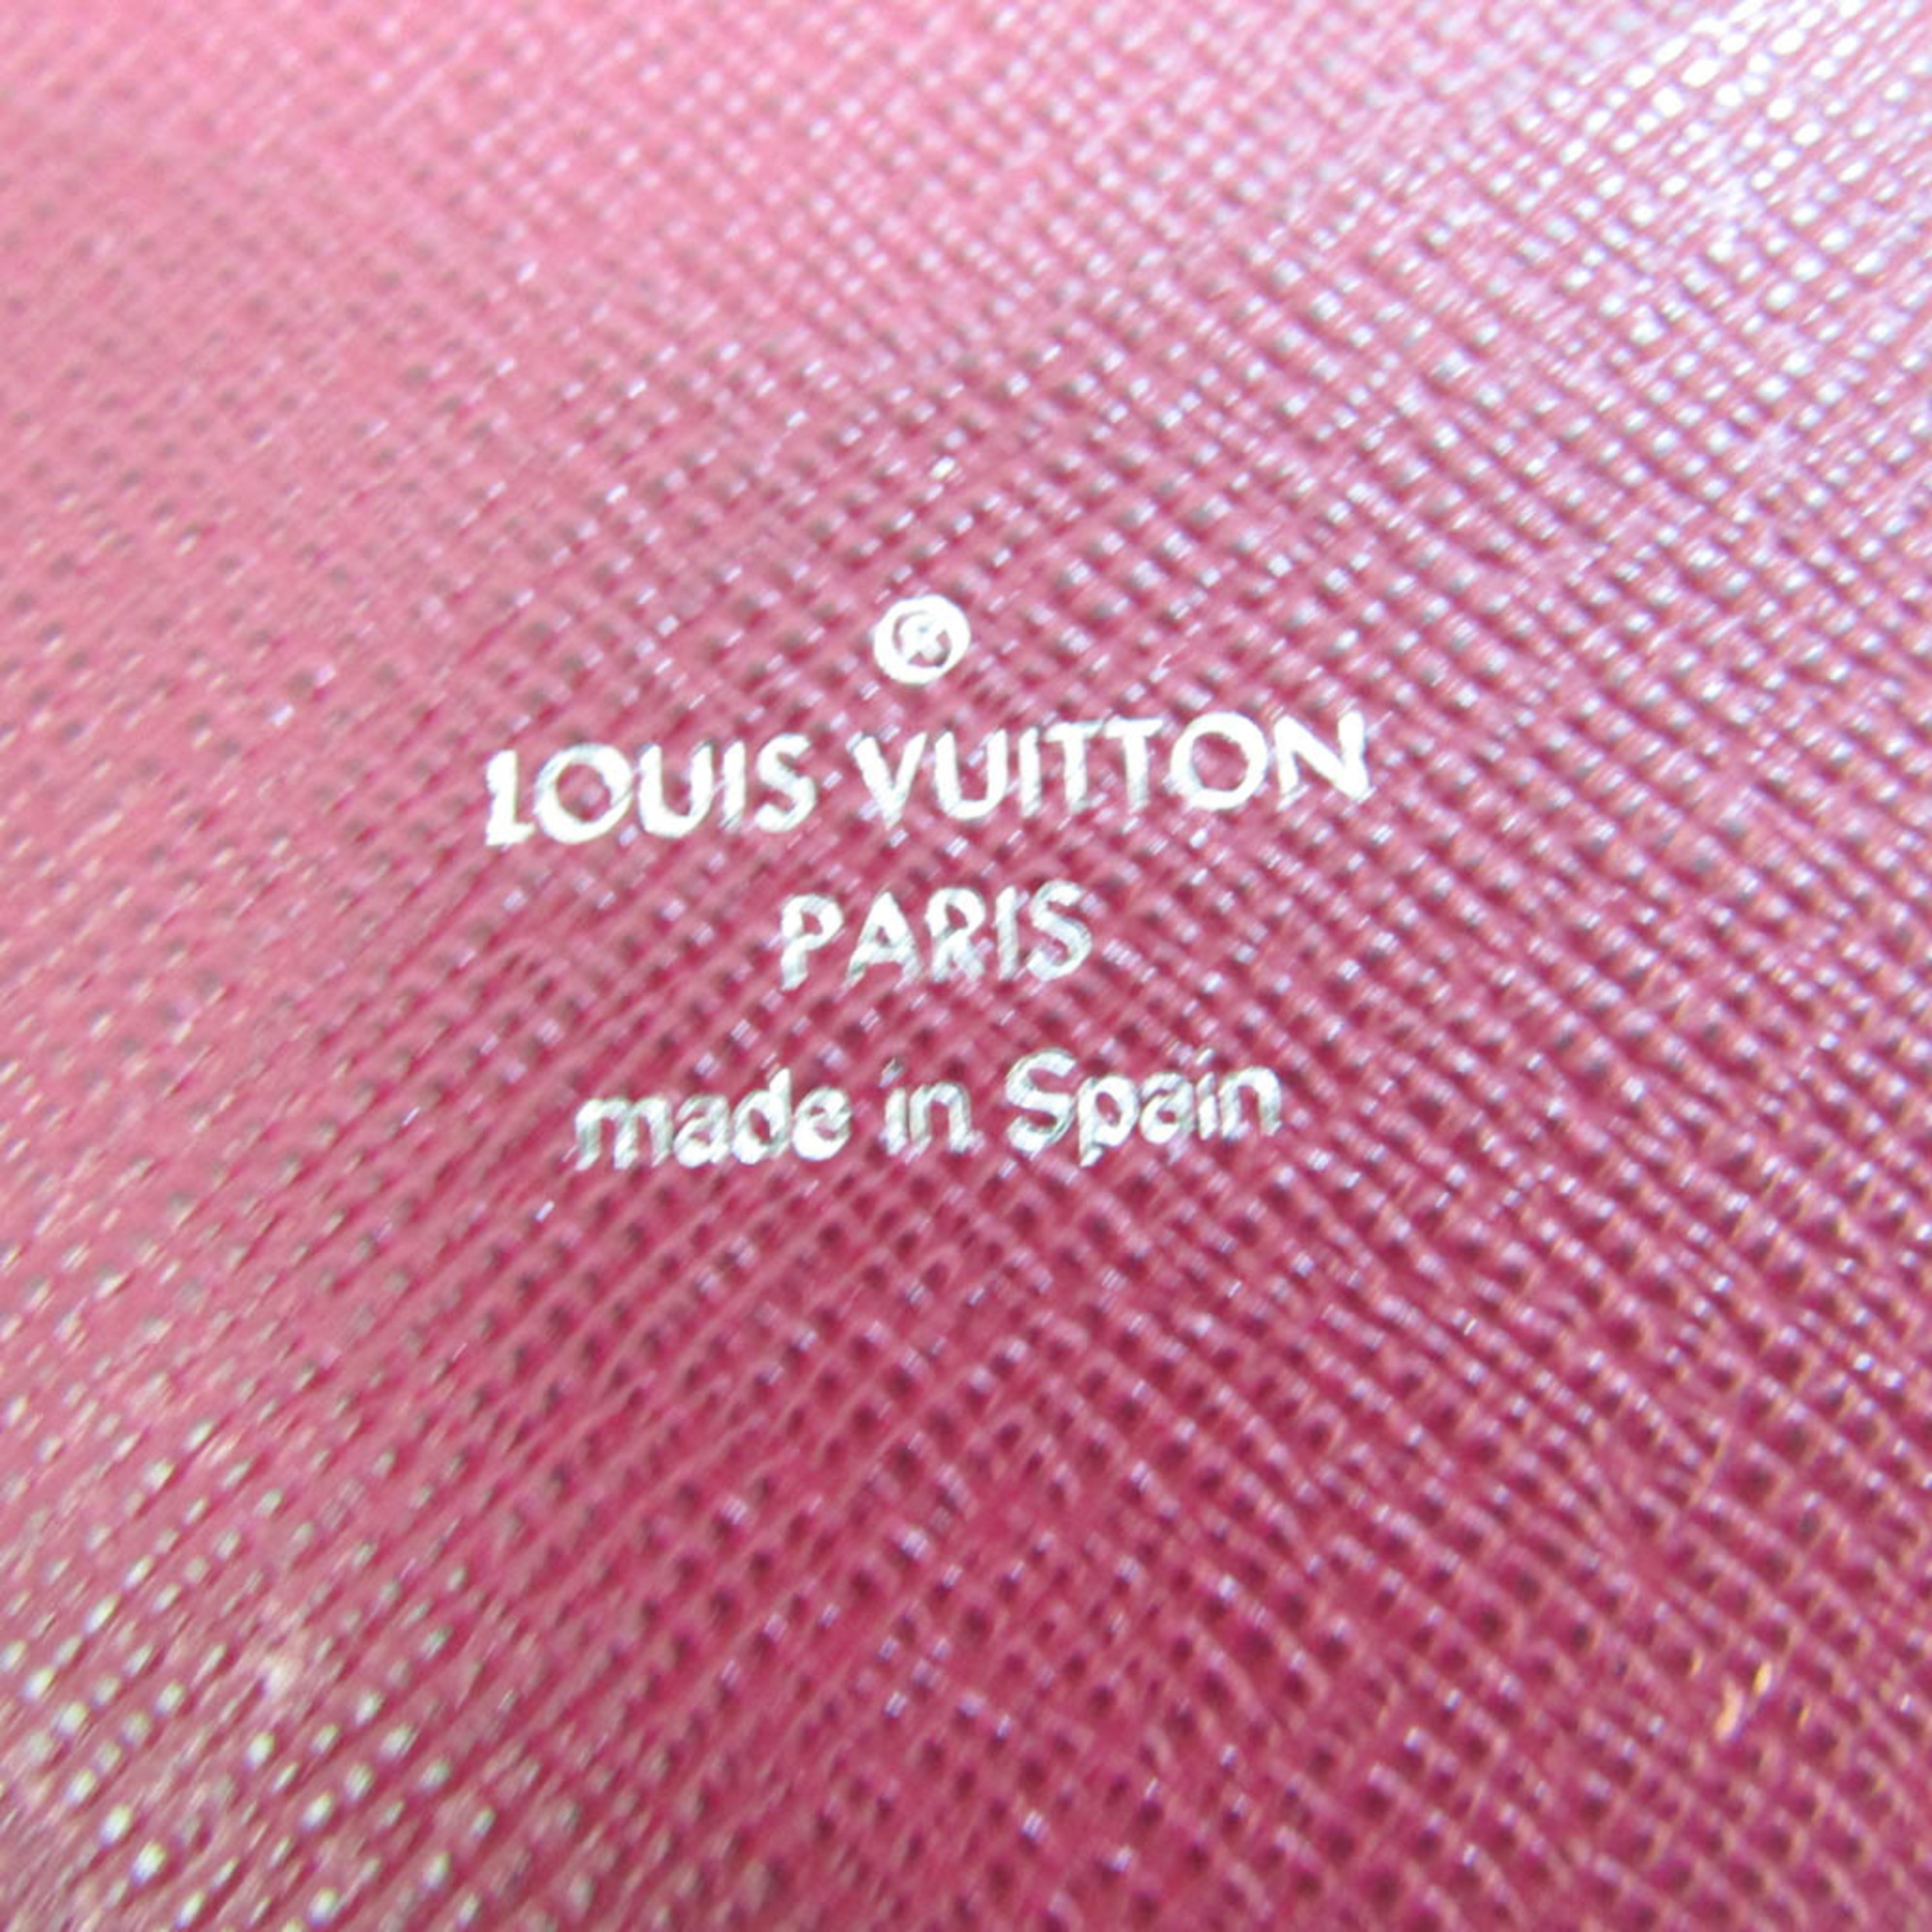 ルイ・ヴィトン(Louis Vuitton) エピ iPhone X フォリオ M64468 エピレザー 手帳型/カード入れ付きケース iPhone X 対応 フューシャ